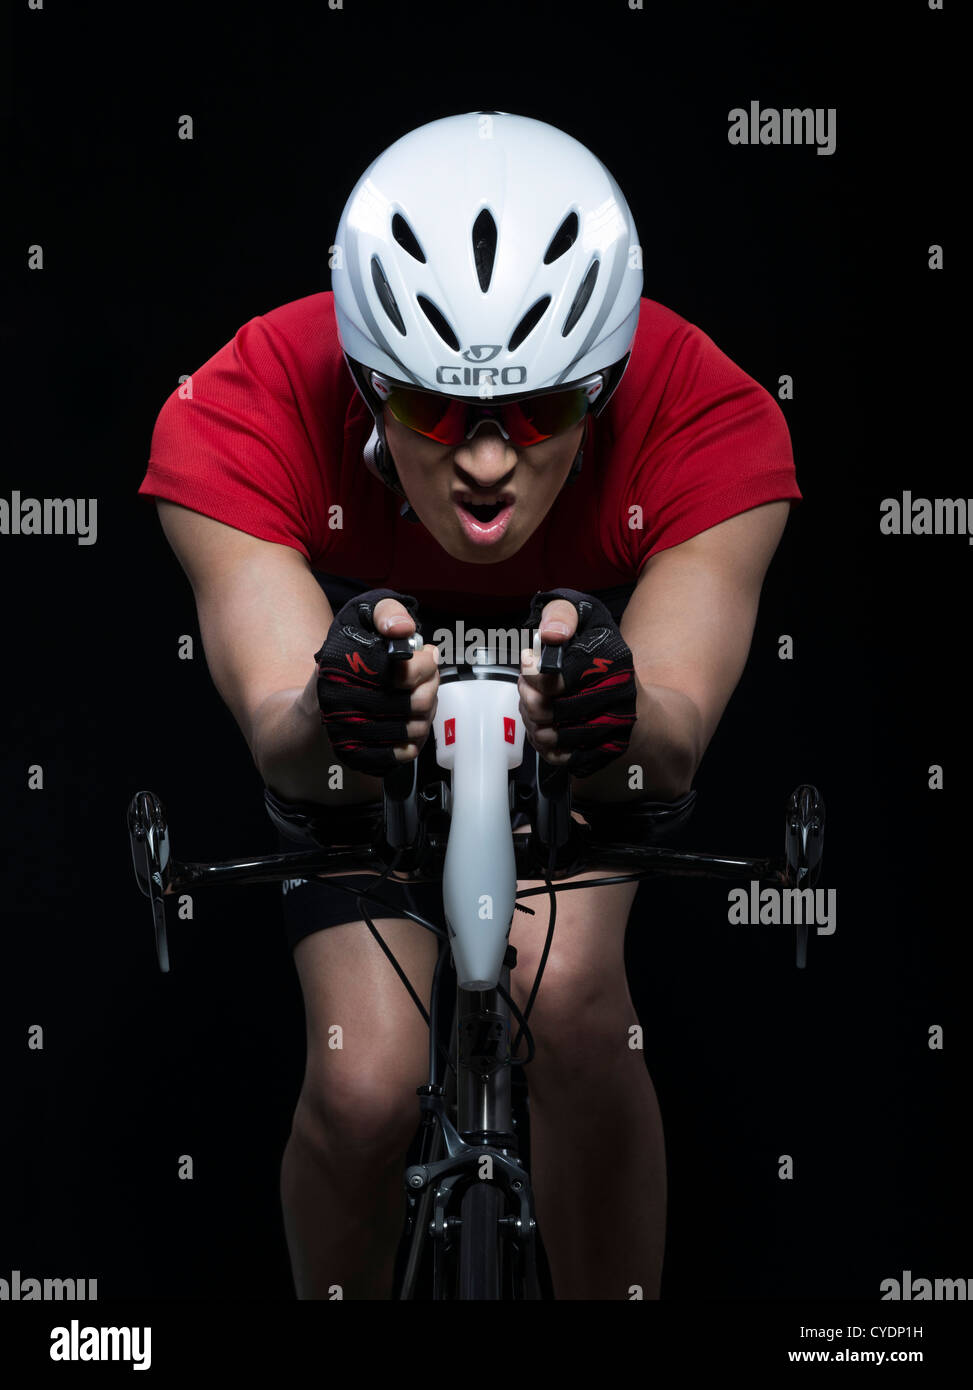 La triathlonienne / time trial racer sur le port du casque de vélo aero Banque D'Images